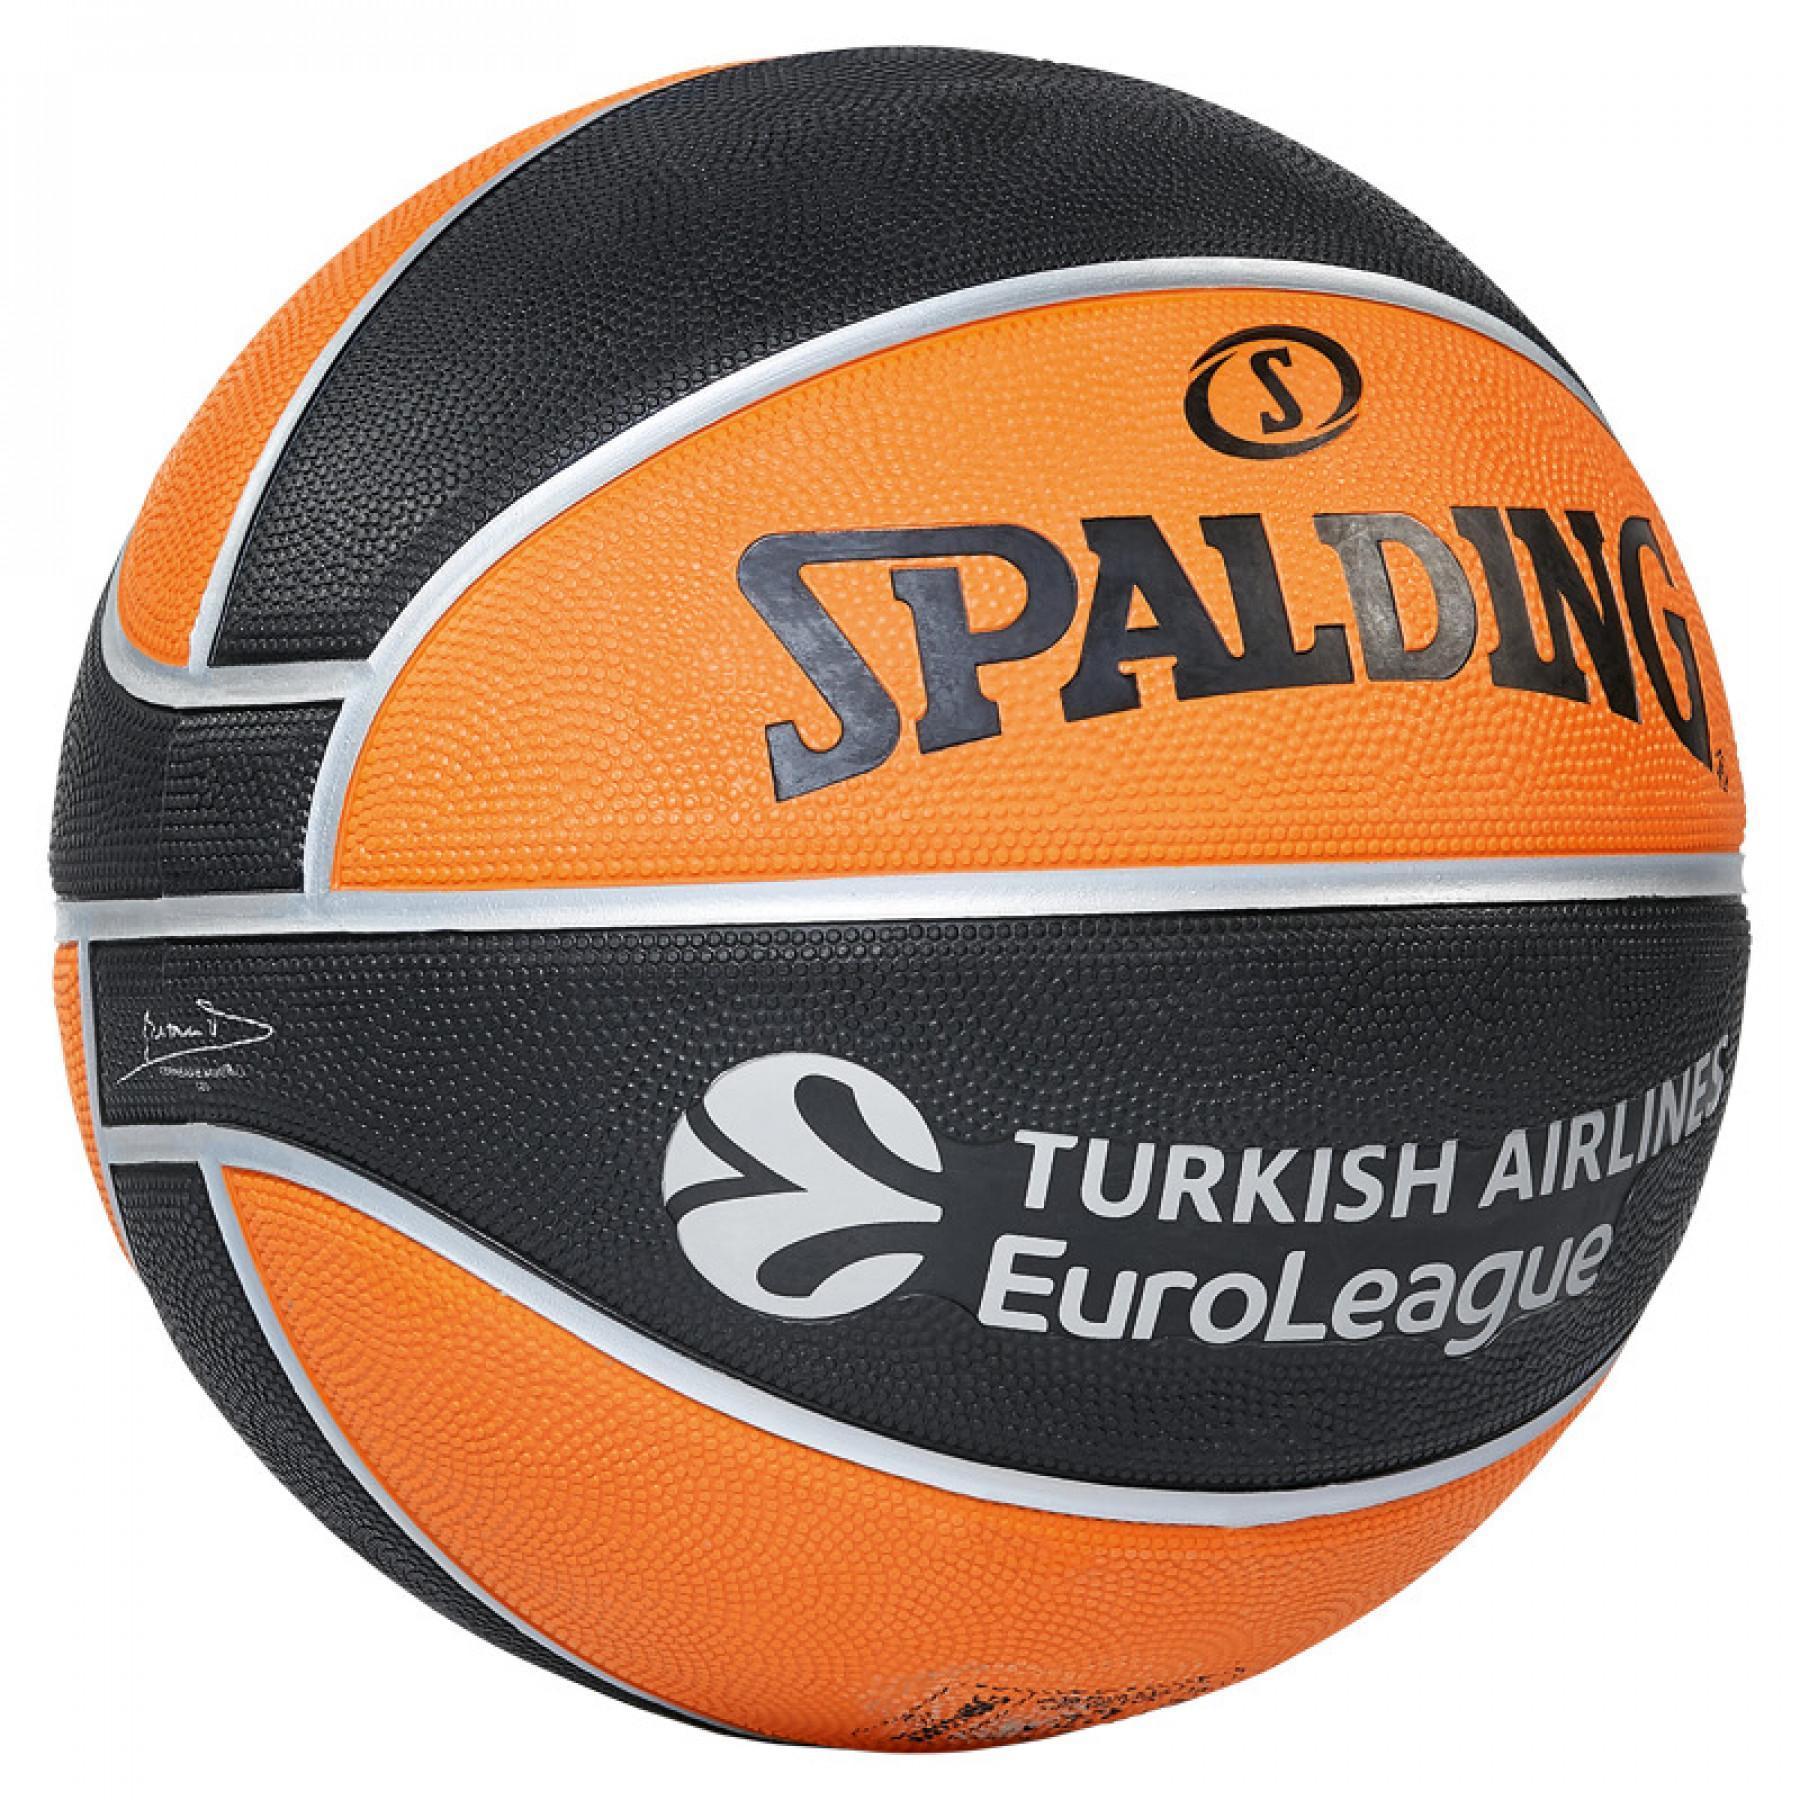 Ballon Spalding Euroleague Tf150 Outdoor (84-001z)